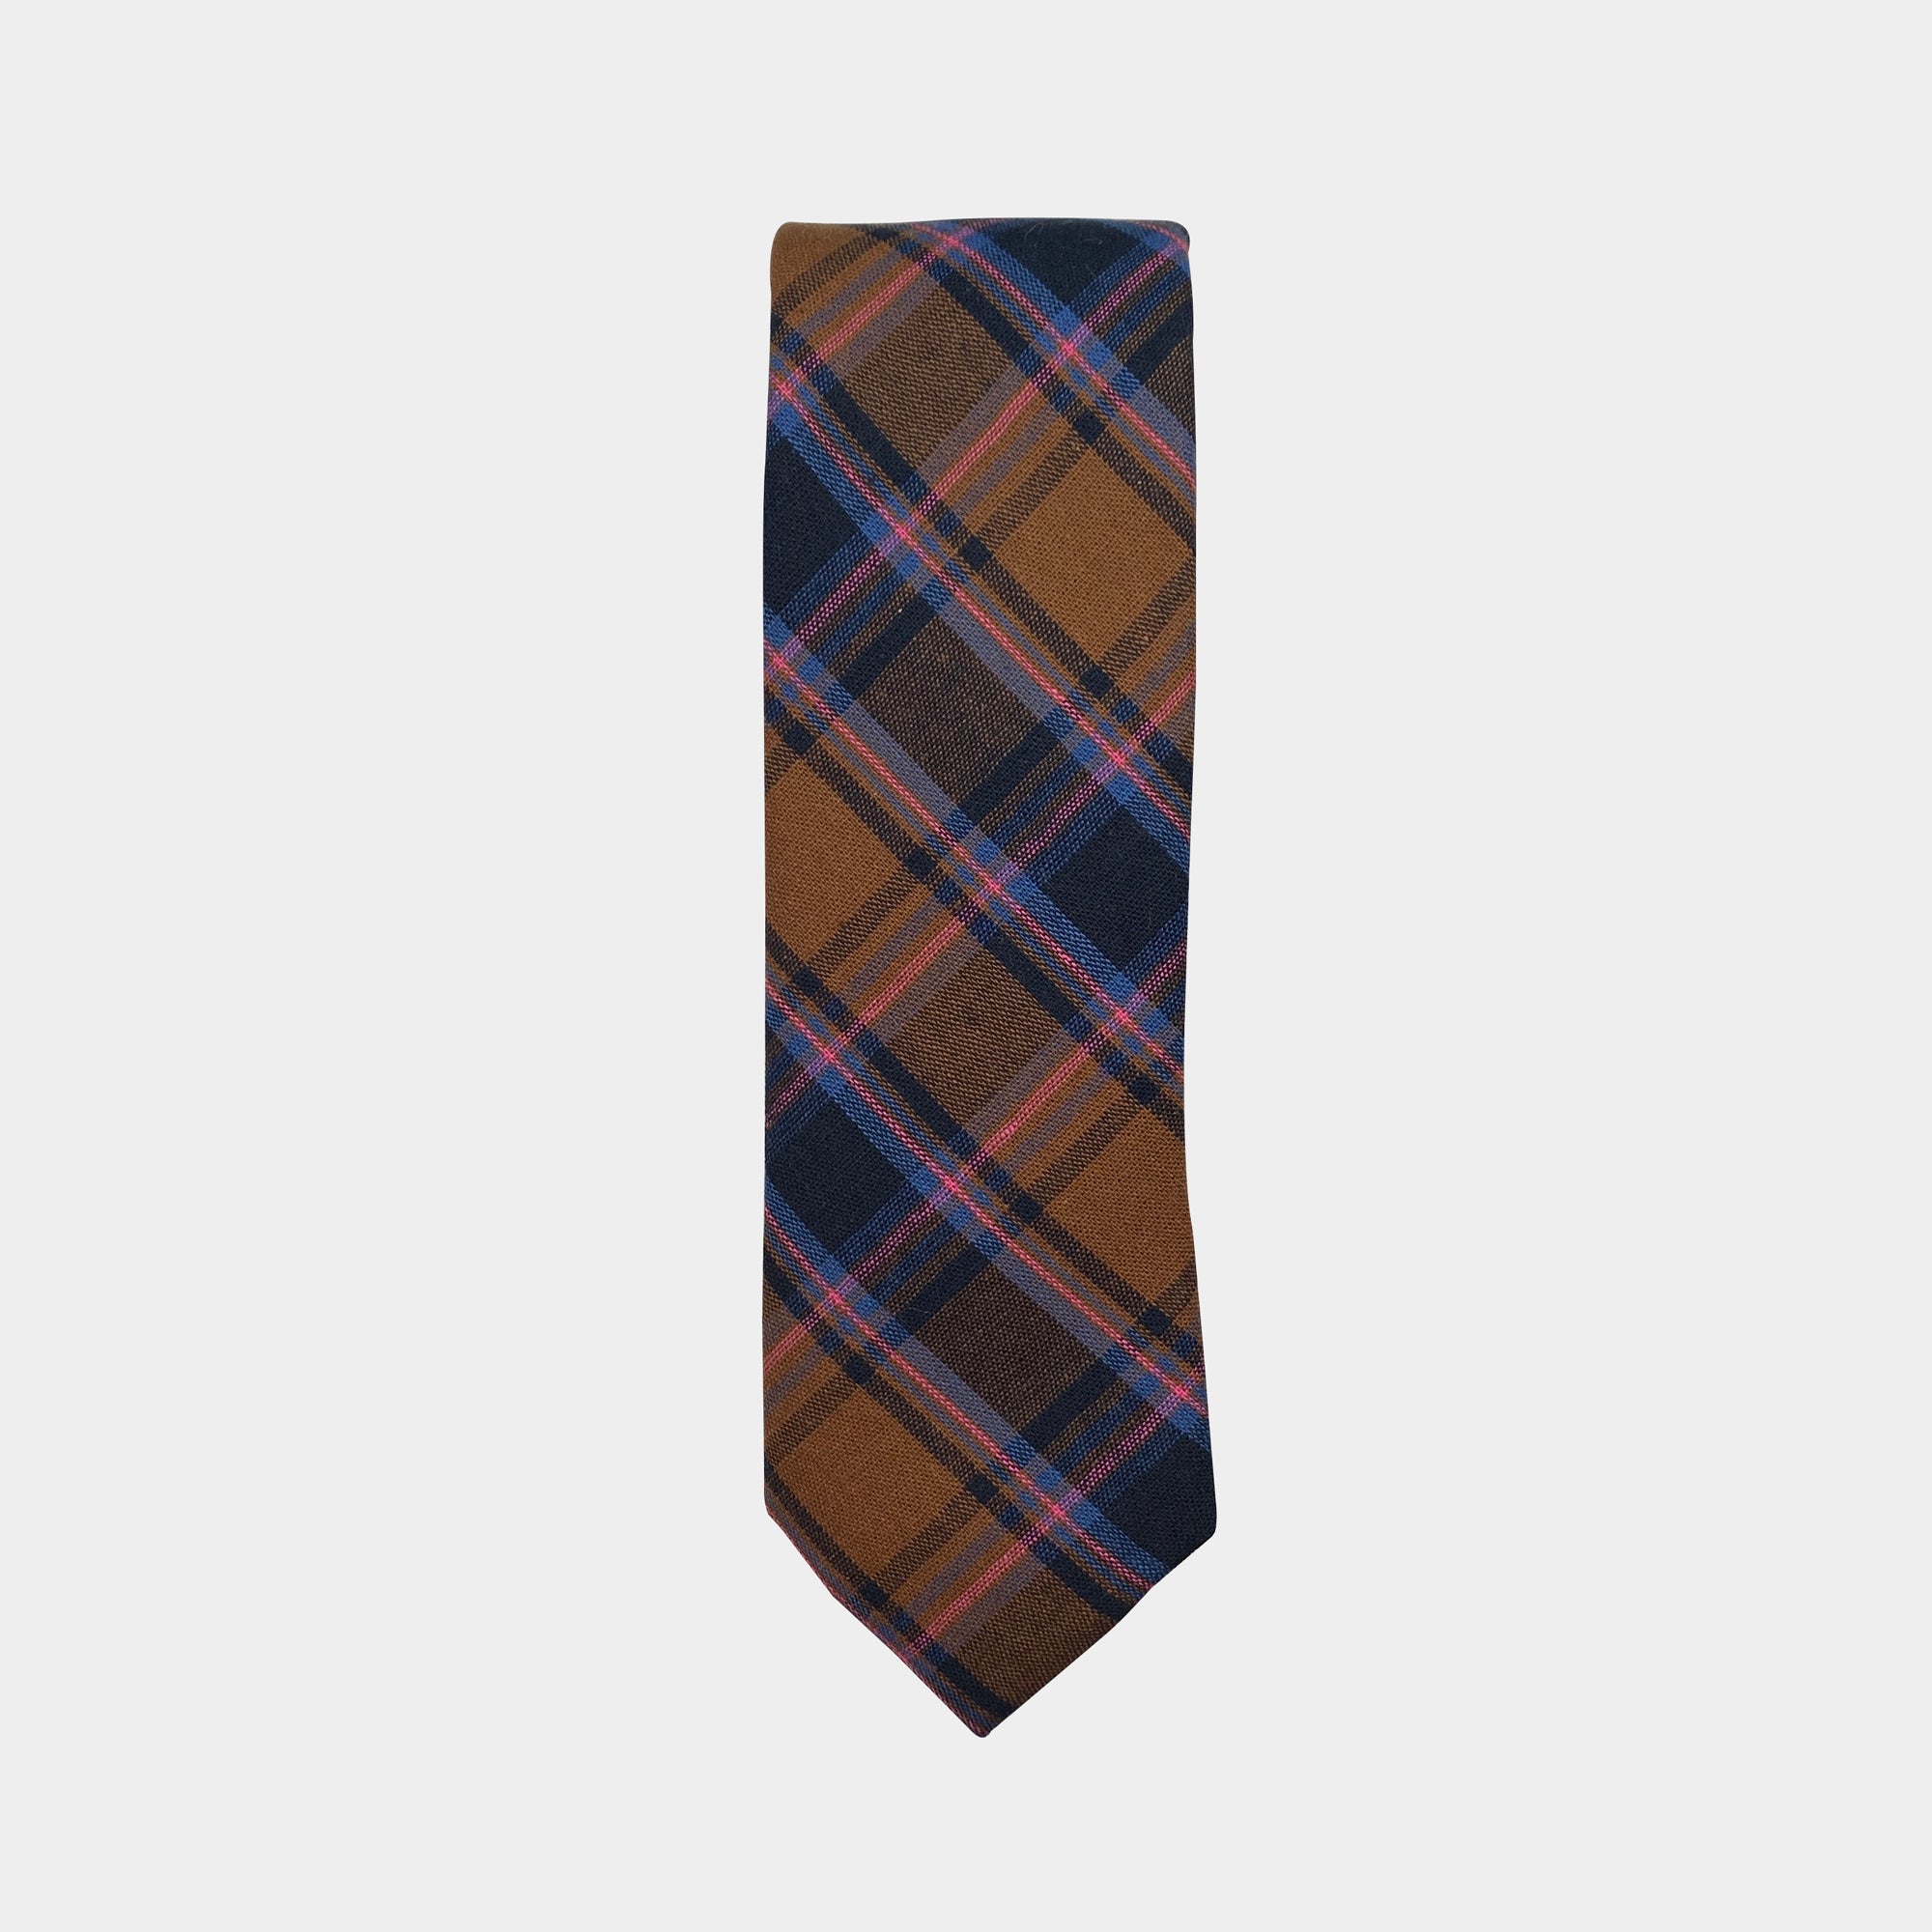 ROCKWELL - Men's Tie